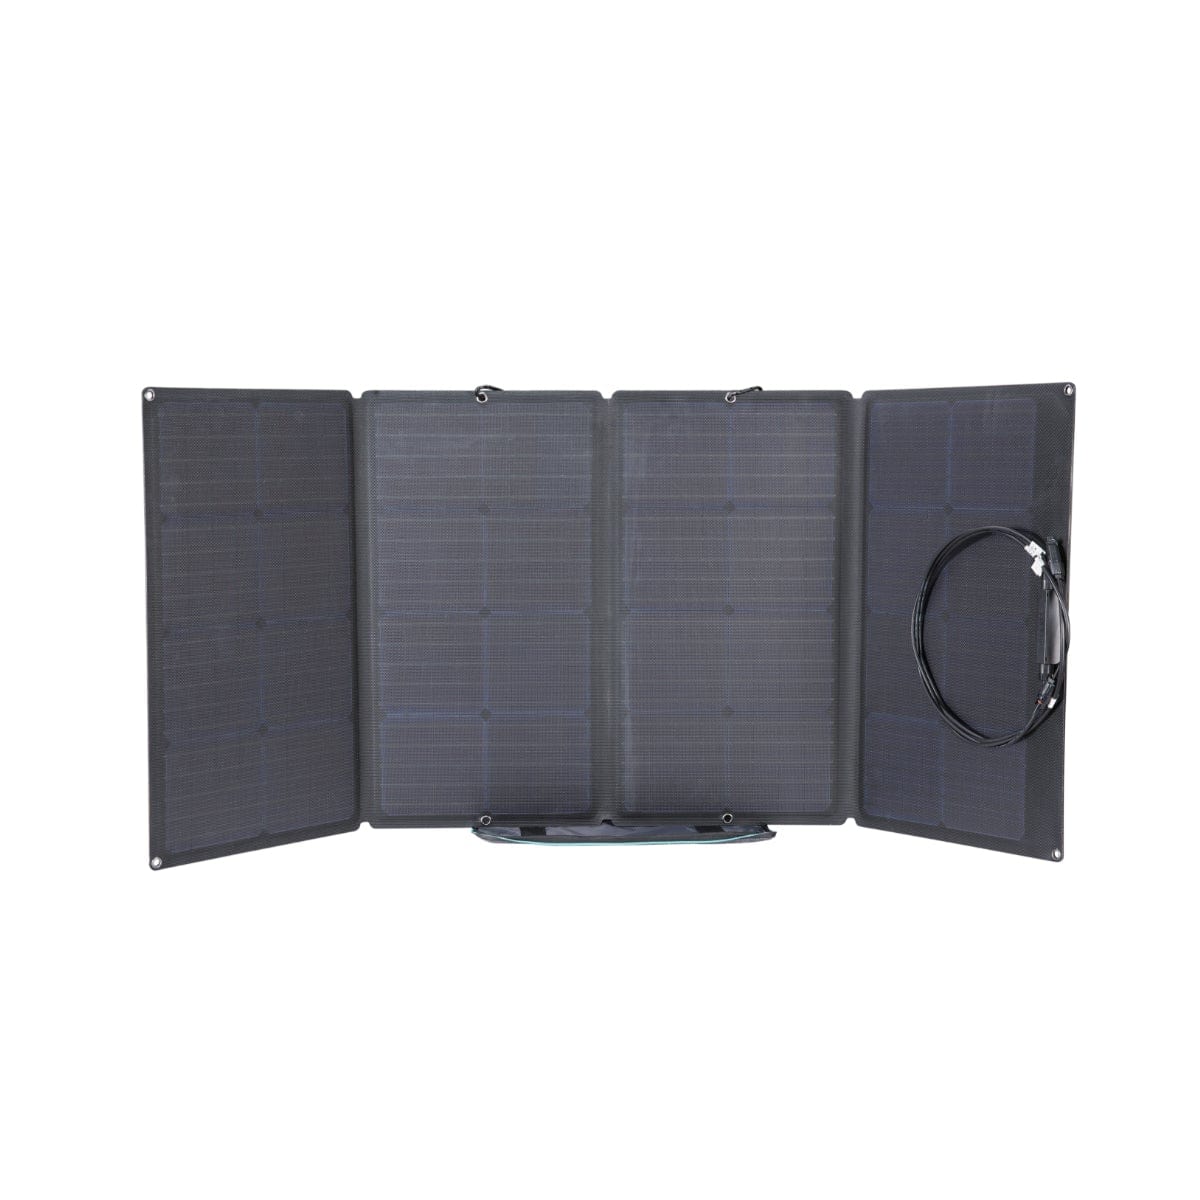 EcoFlow Solar Panel 160W,